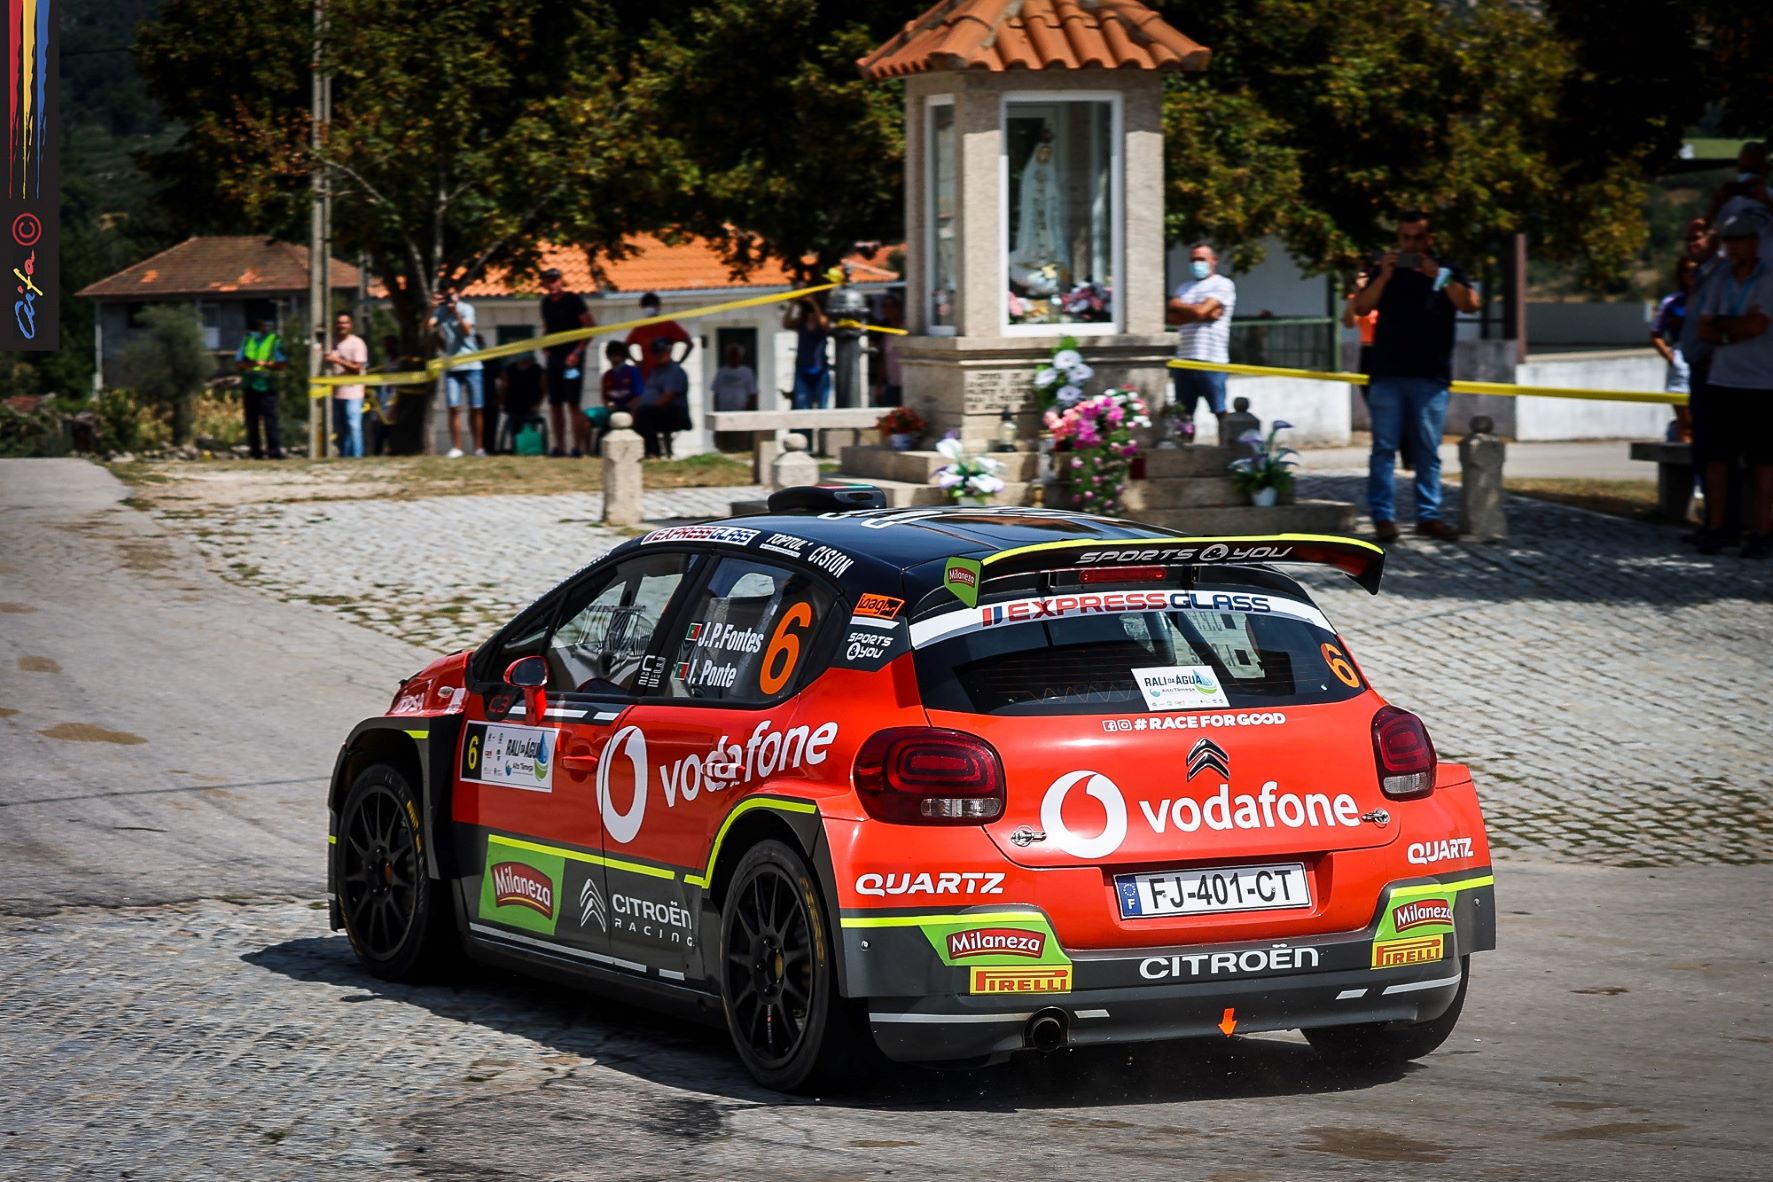 Citroën Vodafone Team aposta na conquista de nova vitória no Rallye Vidreiro 13